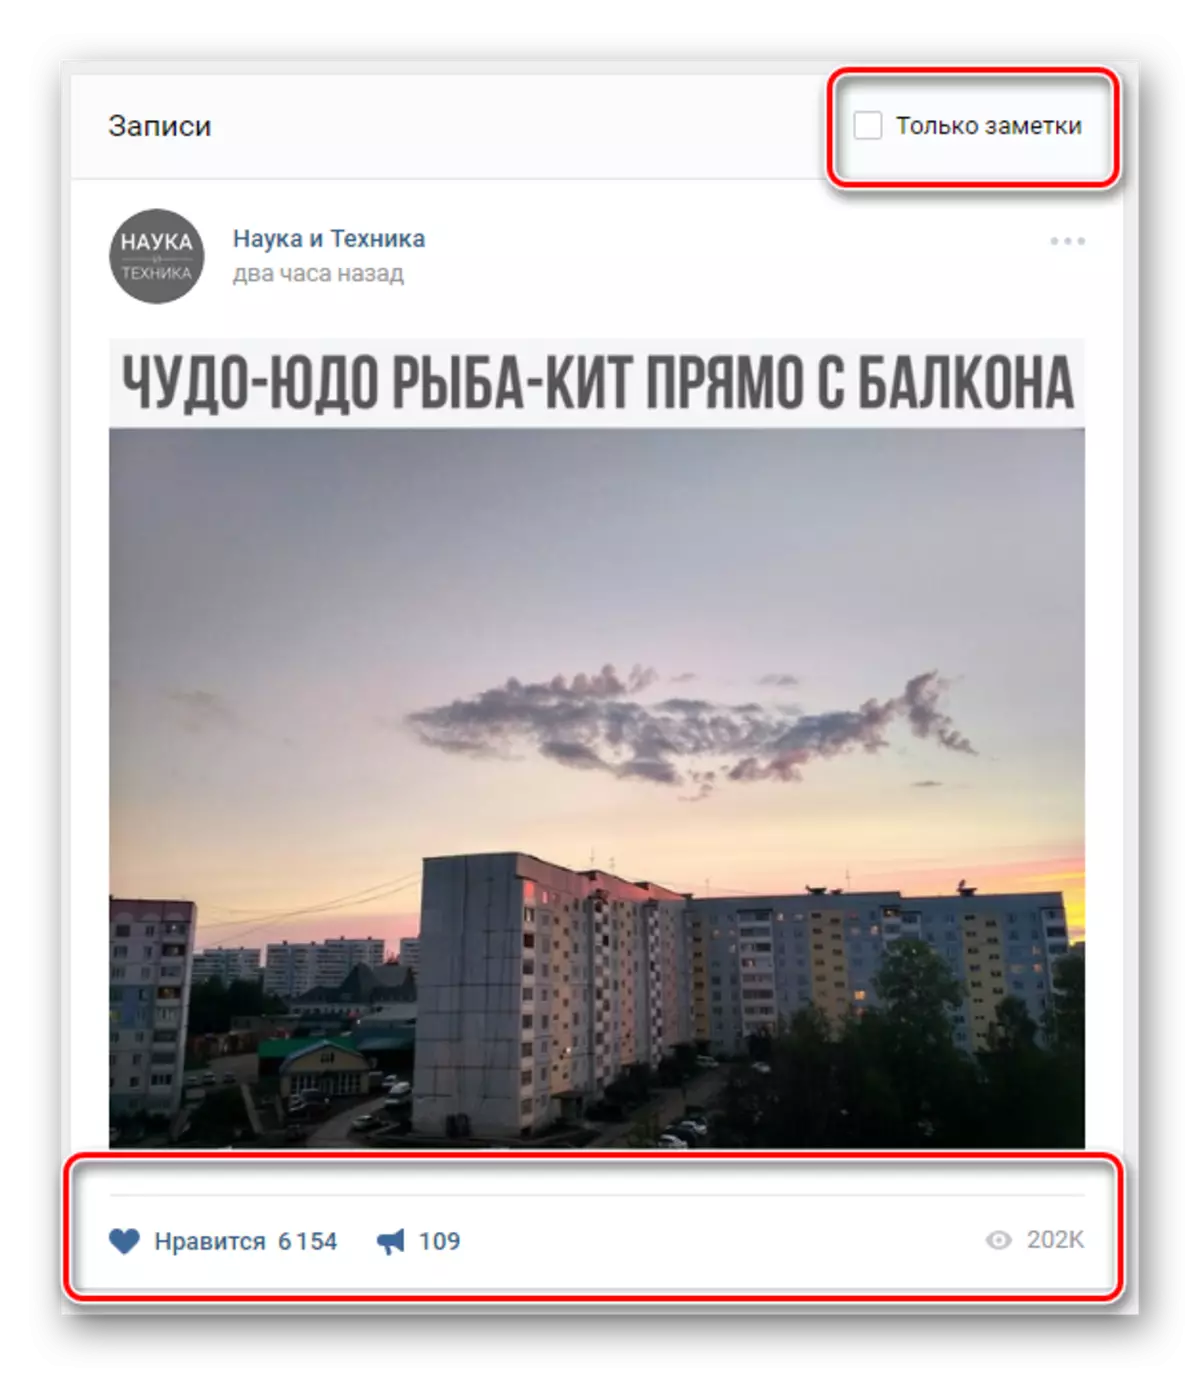 Poiščite oddaljeni vnos v Vkontakte Zaznamki